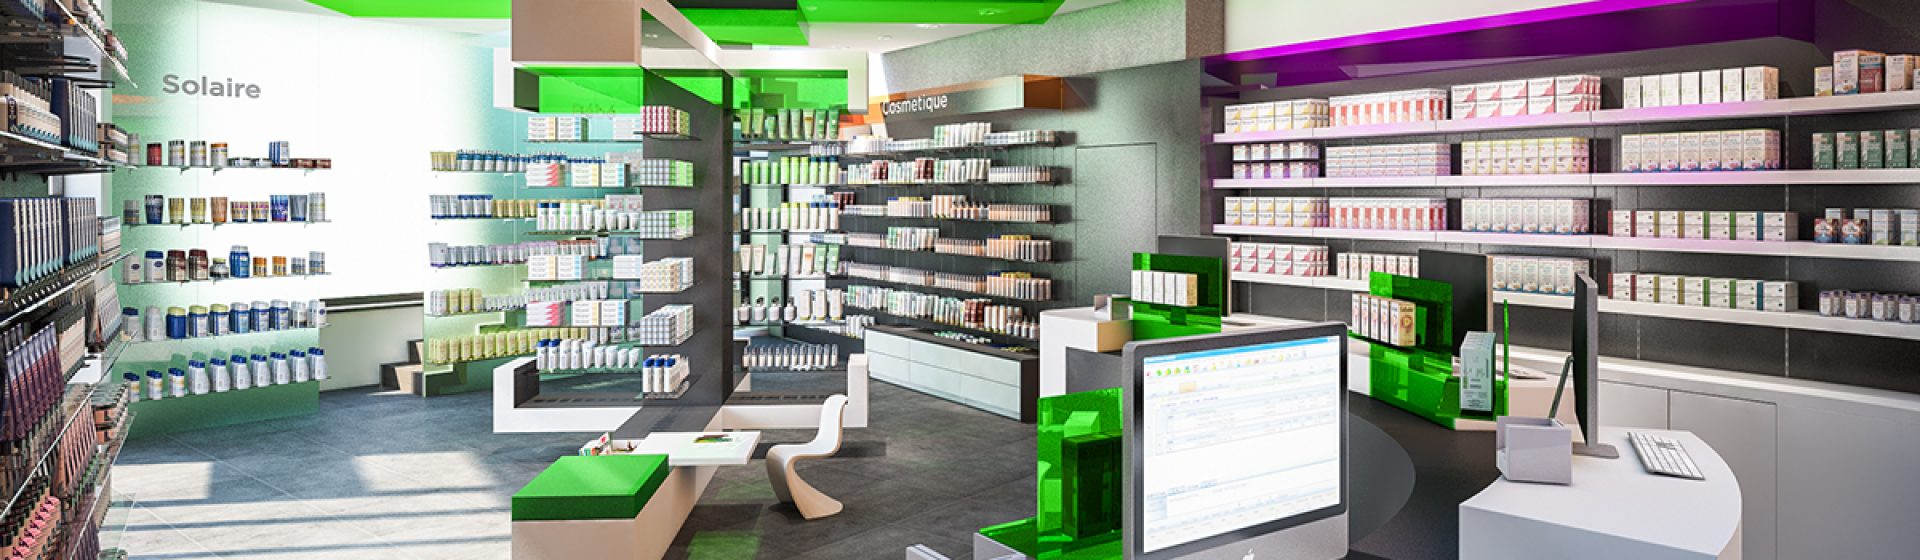 Service de pharmacie à Saint Quentin – Pharmacie Saint-Jacques